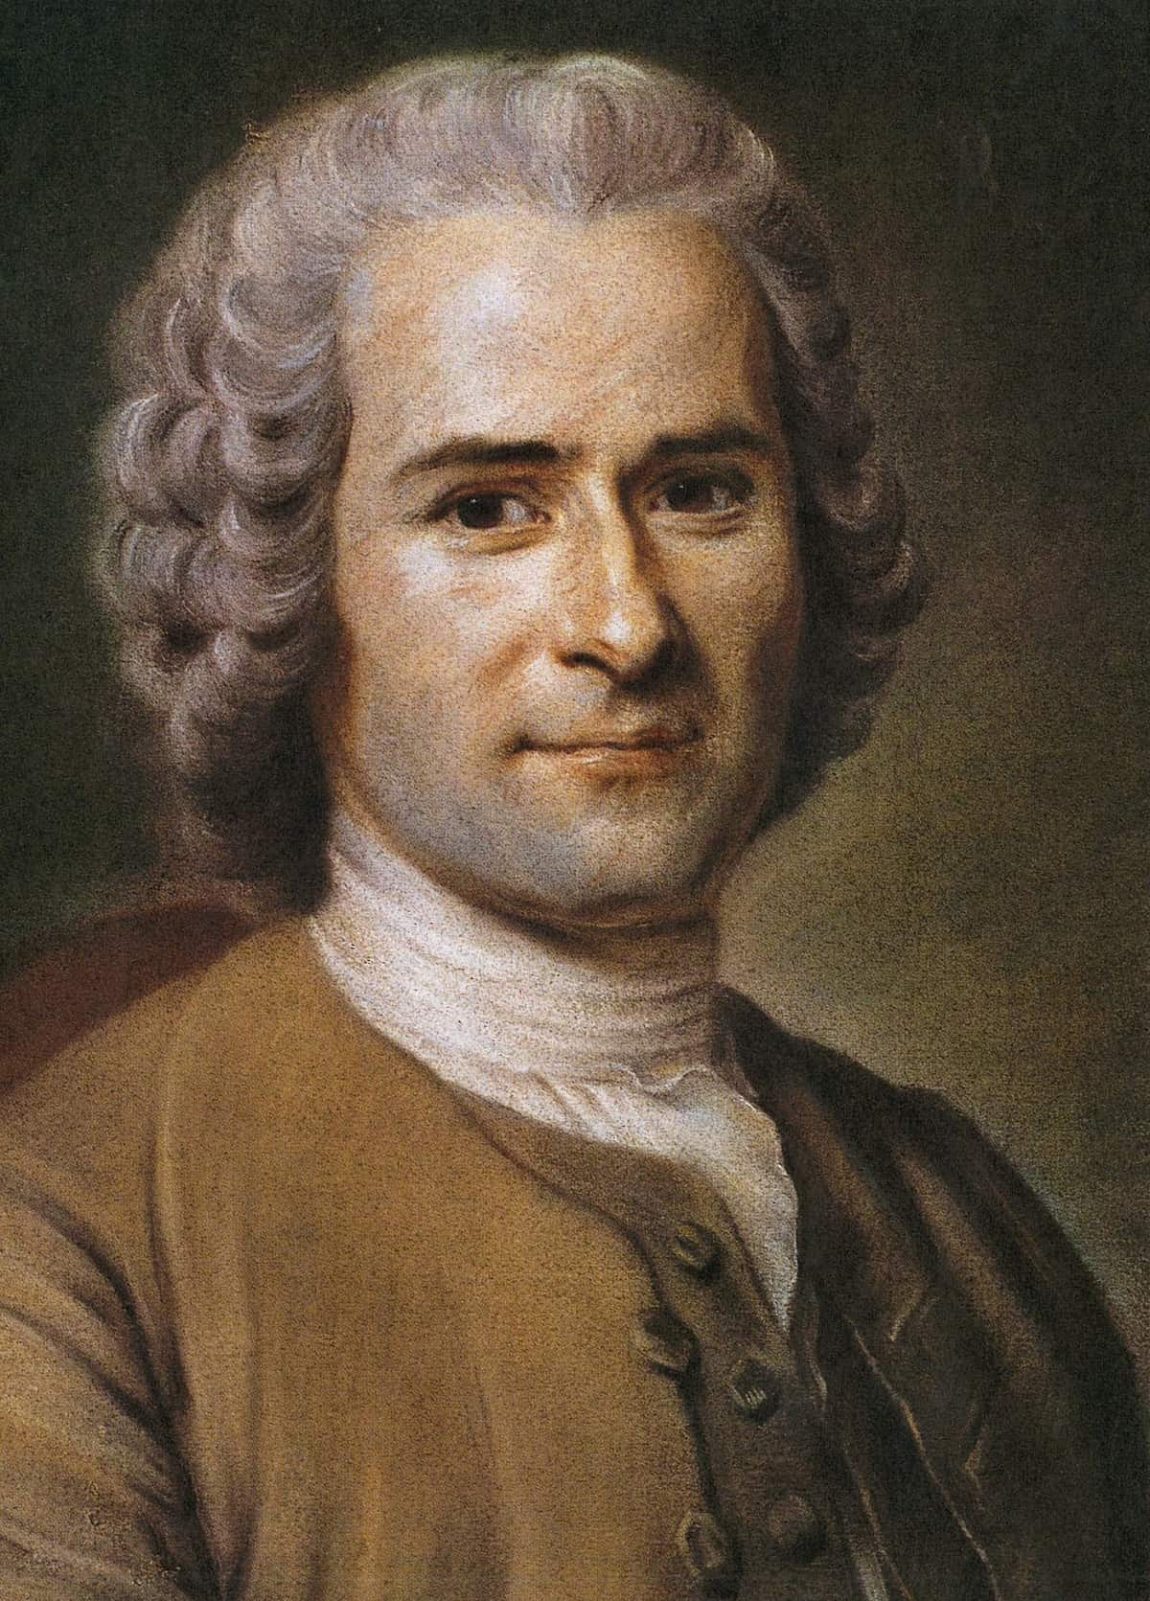 Jean Jacques Rousseau painted portrait 2018020120 5a73753a5fa21